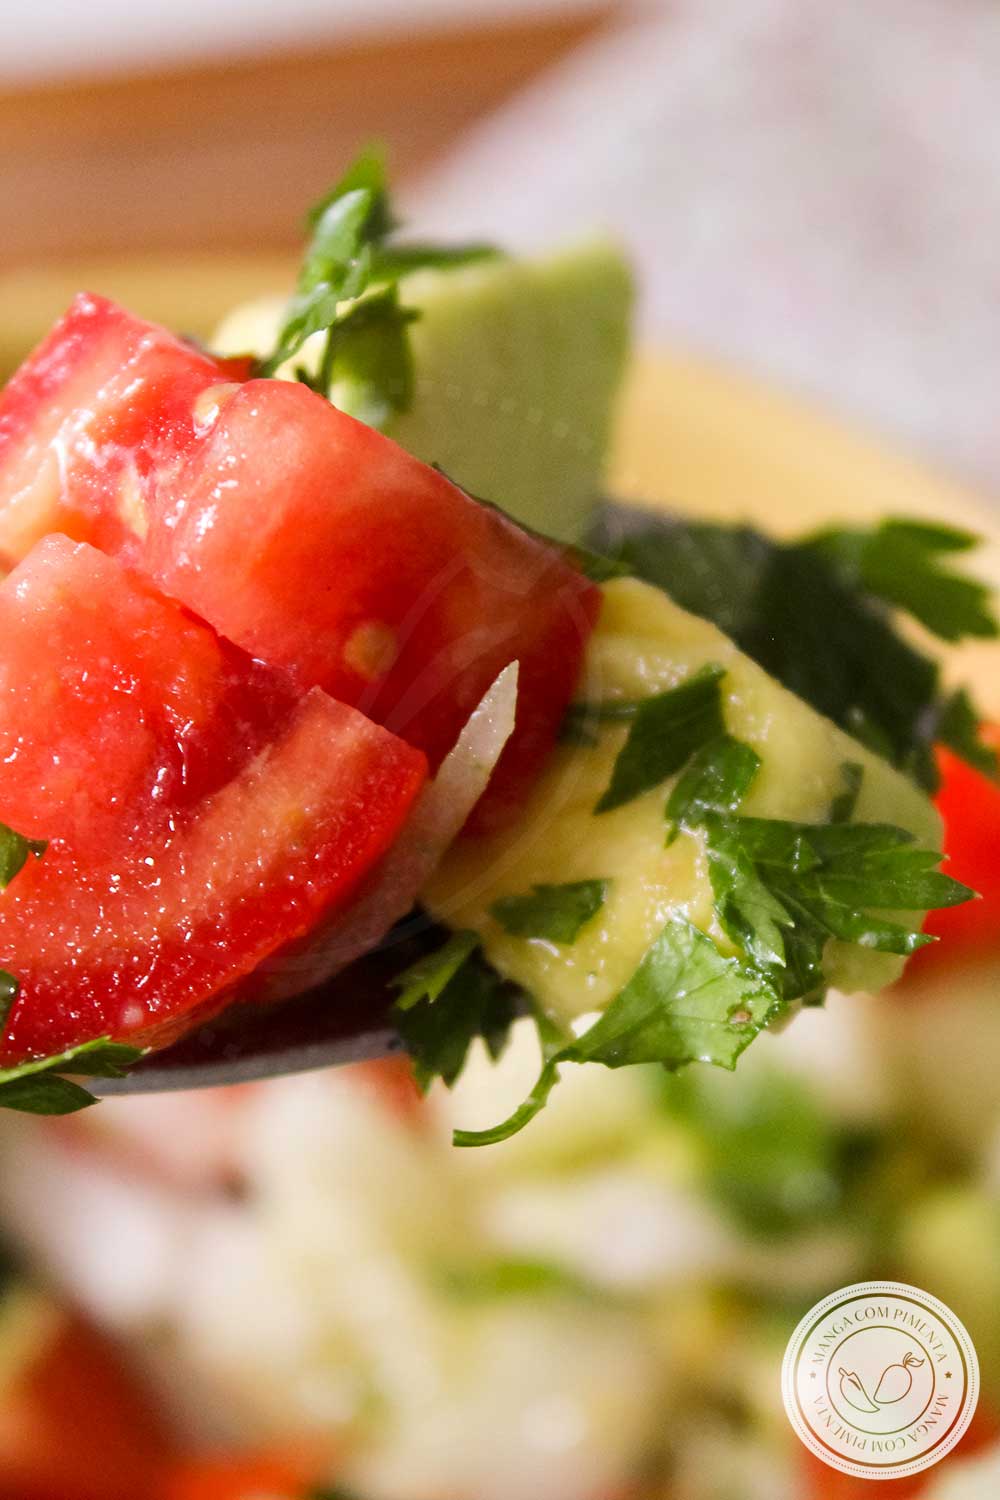 Receita de Salada de Tomate com Abacate e Pepino - um prato refrescante para o almoço ou jantar!